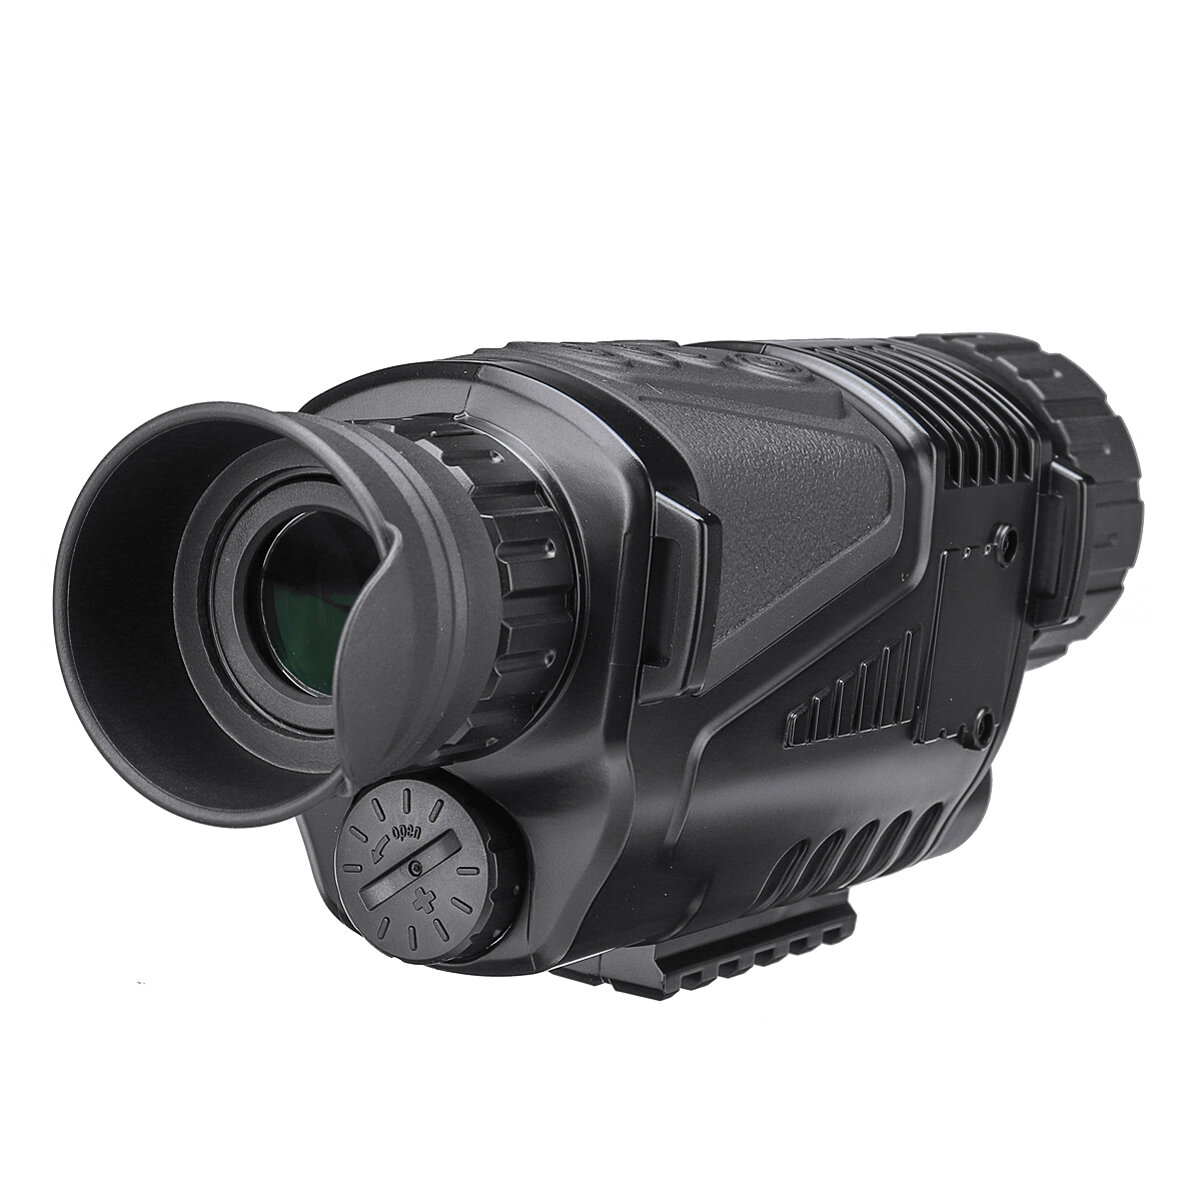 屋外旅行や狩猟用のHD赤外線ナイトビジョンデバイスデュアルユースモノキュラーカメラ5倍デジタルズーム望遠鏡